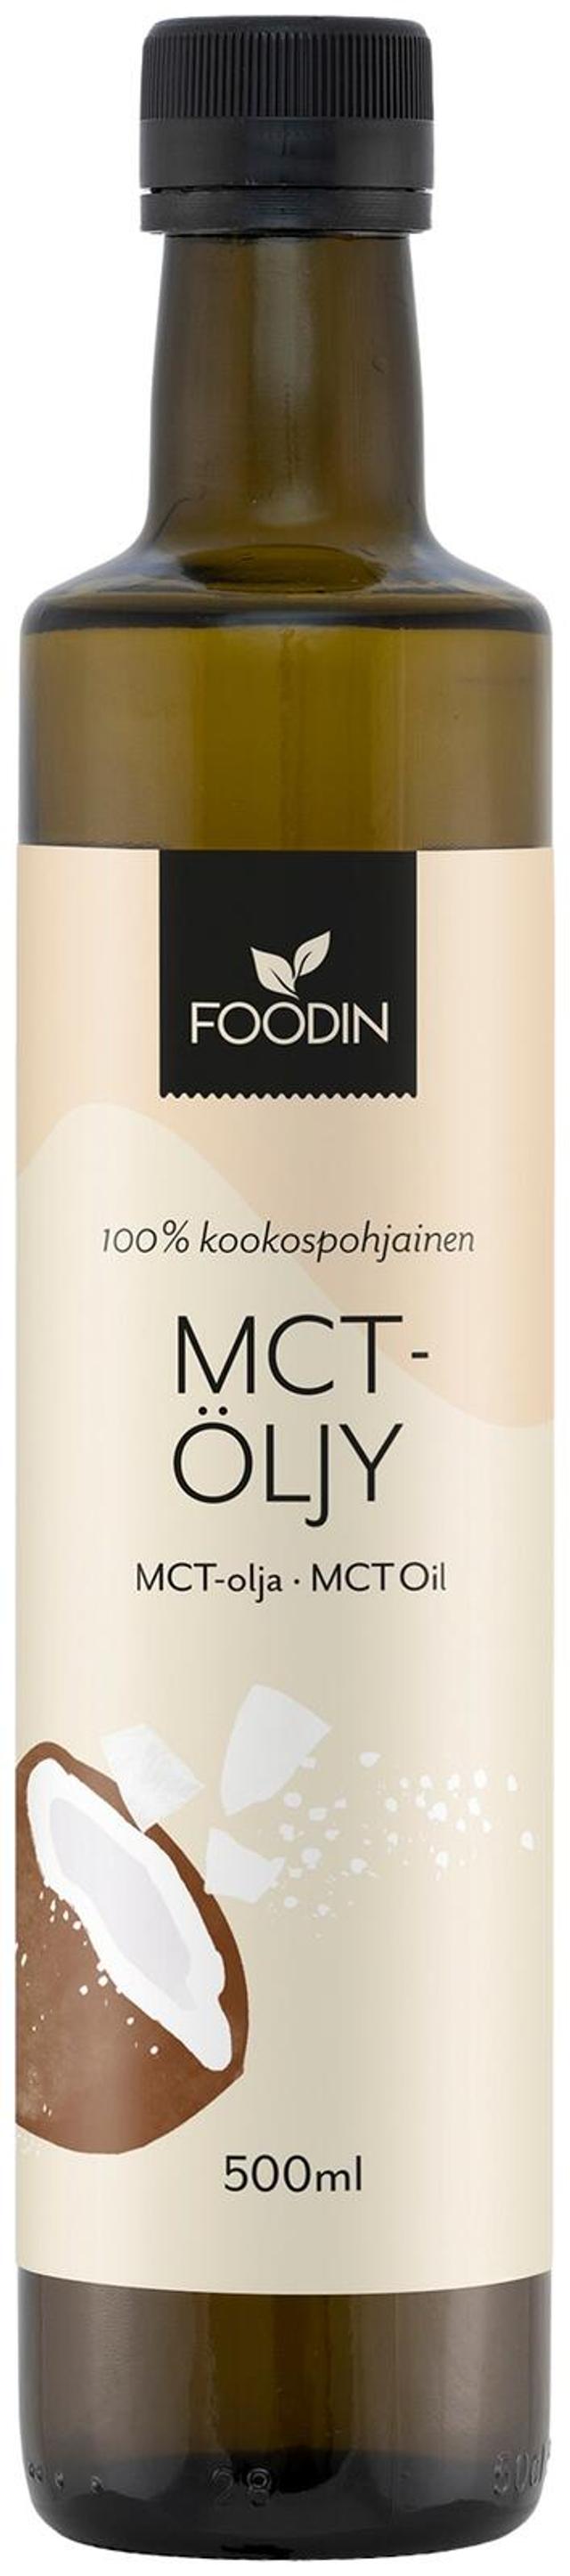 Foodin MCT-öljy, (100% kookosöljypohjainen), 500ml